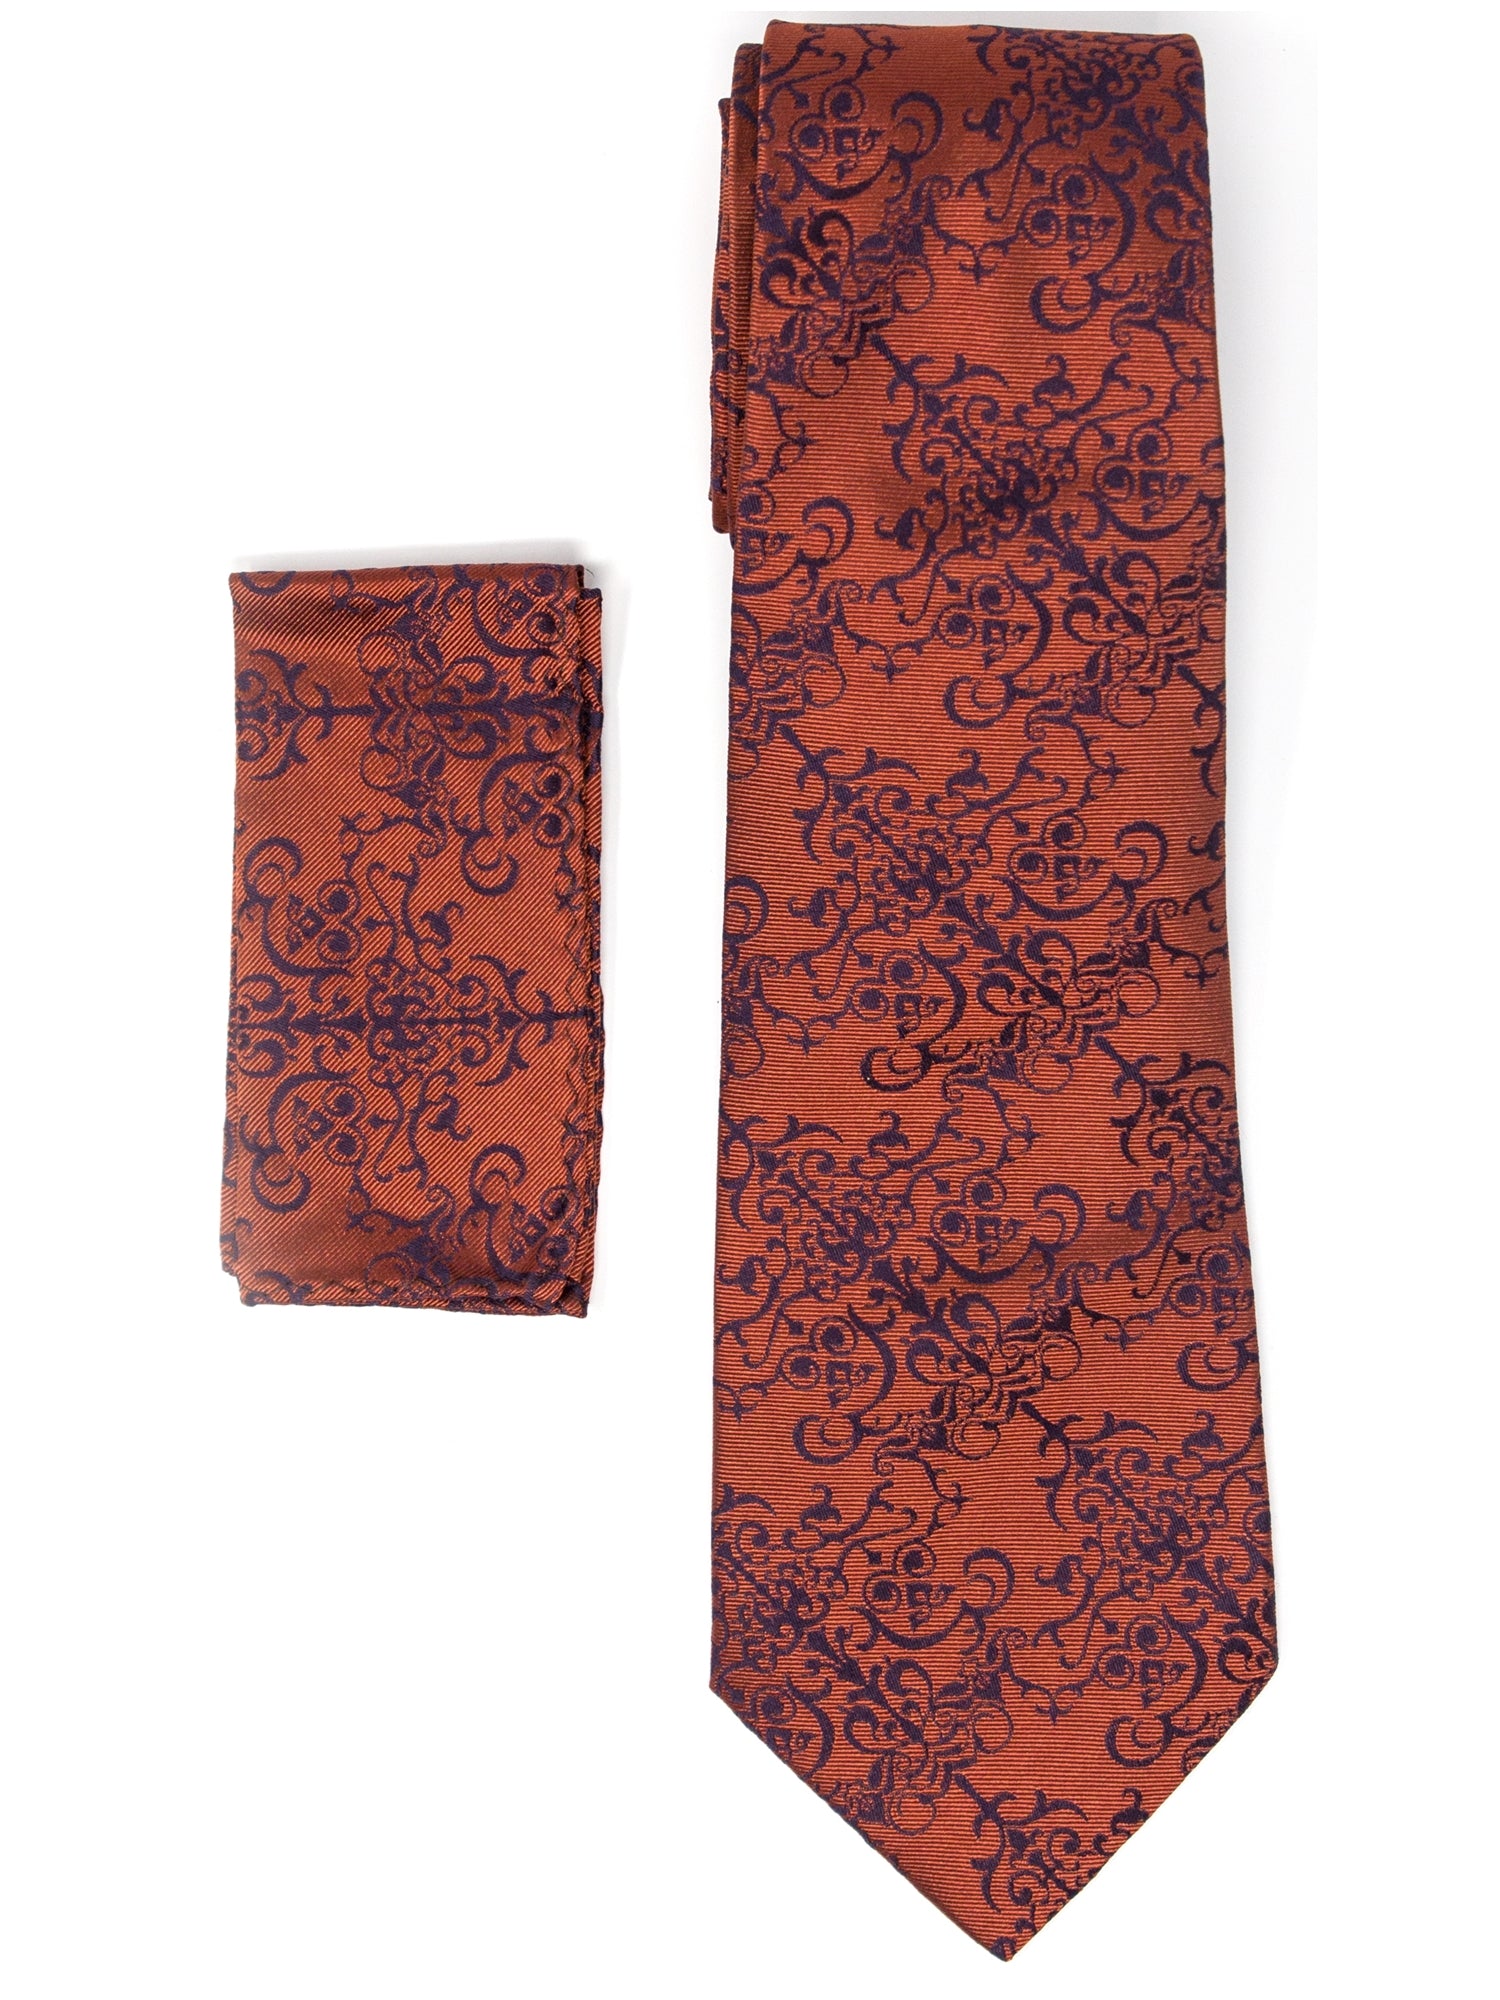 Men's Silk Woven Wedding Neck Tie With Handkerchief Neck Tie TheDapperTie Copper & Brown Paisley Regular 